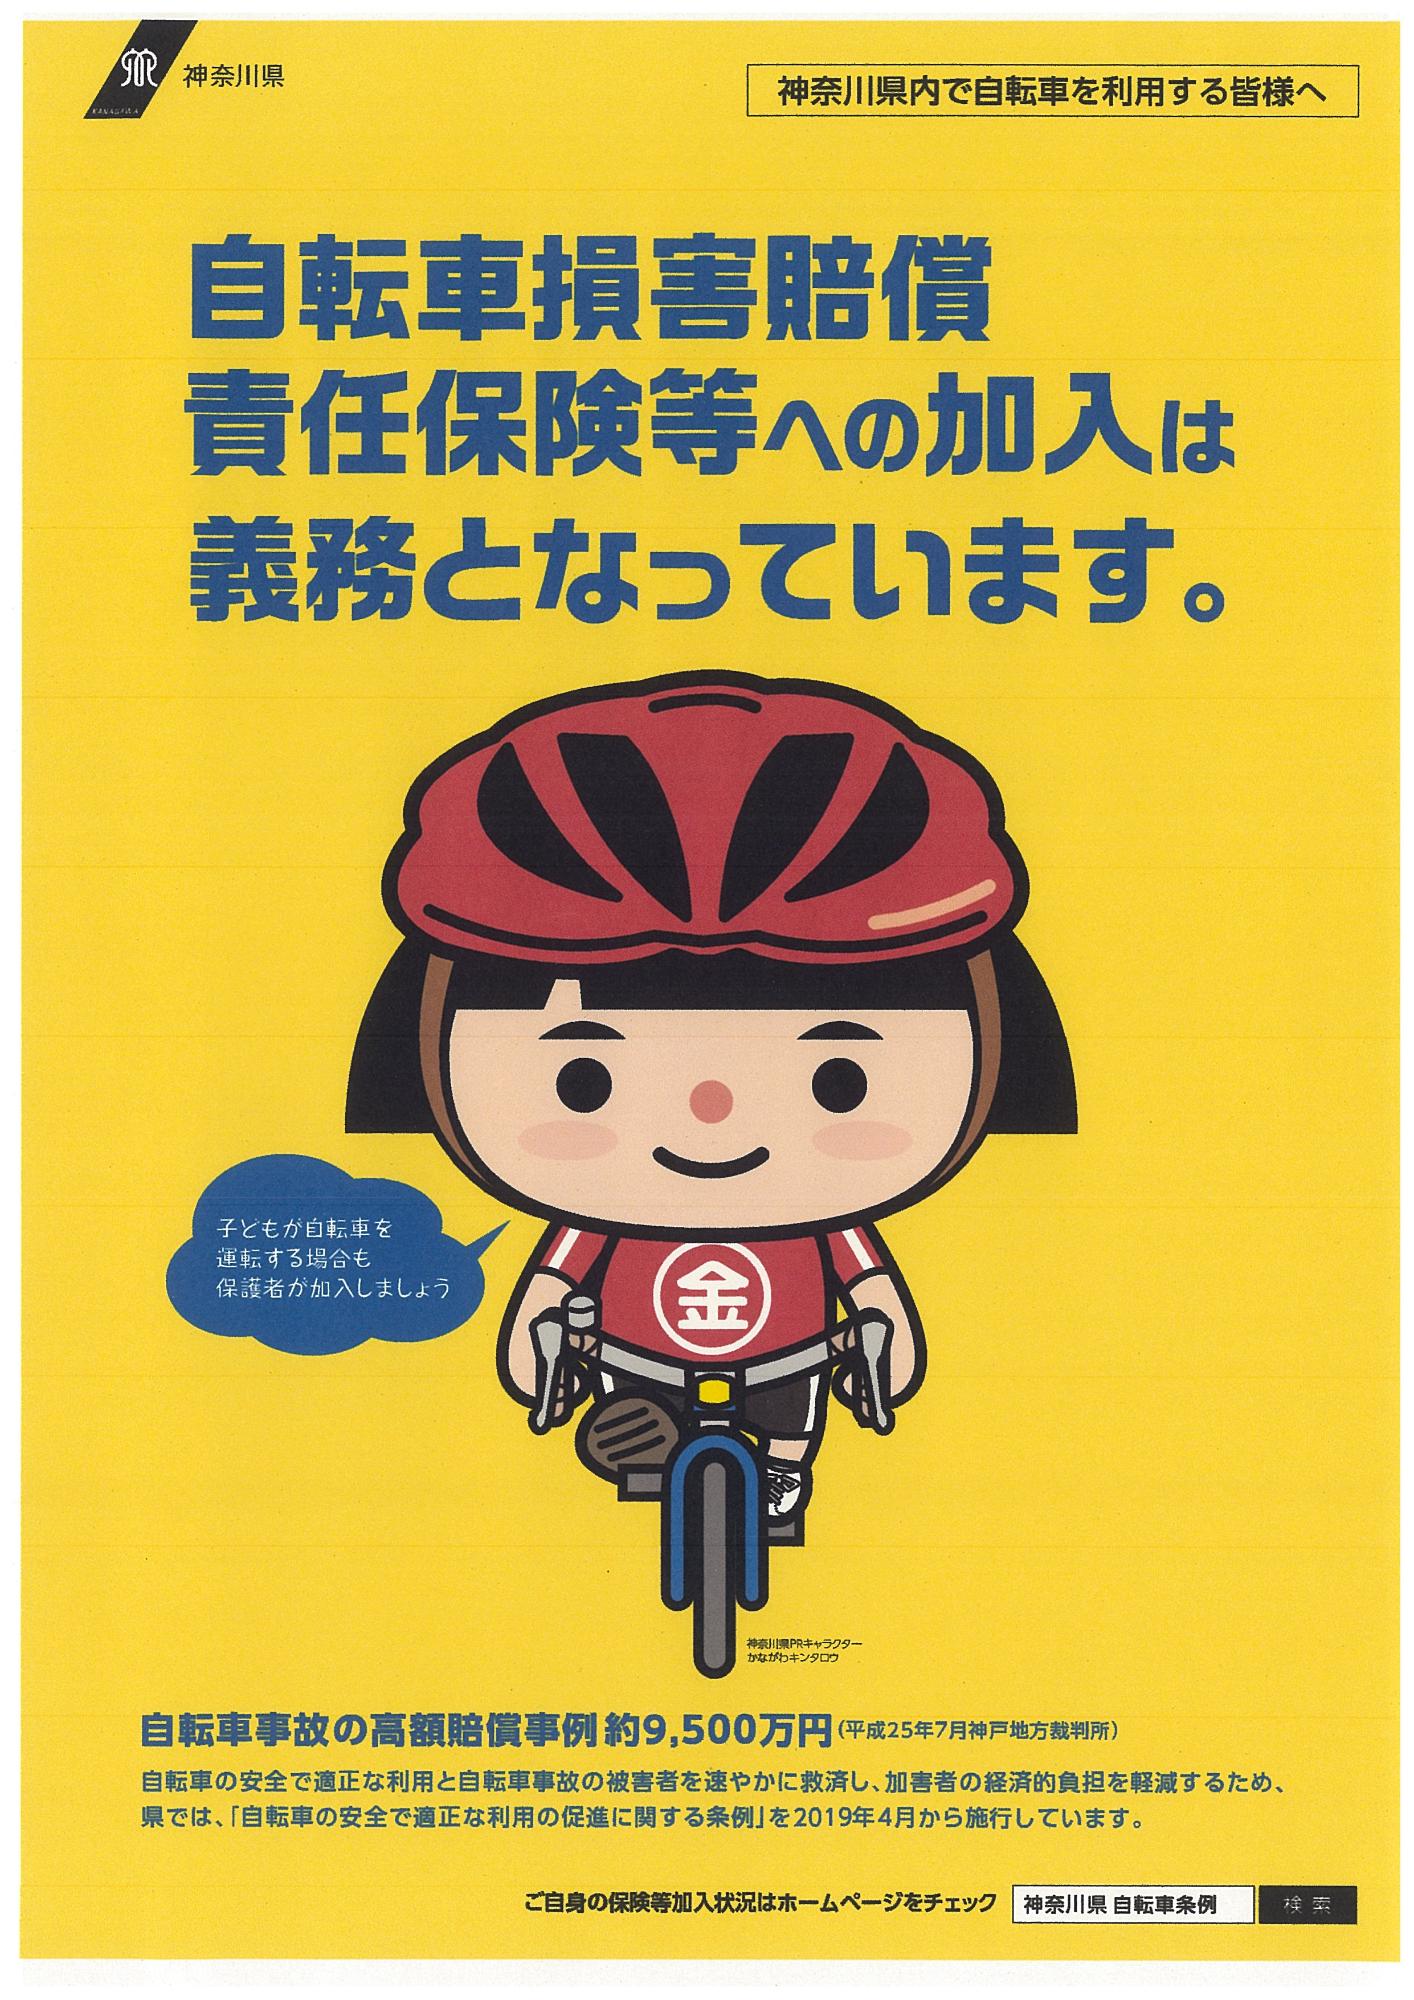 「自転車損害賠償責任保険等への加入は義務となっています」の記載があるポスター